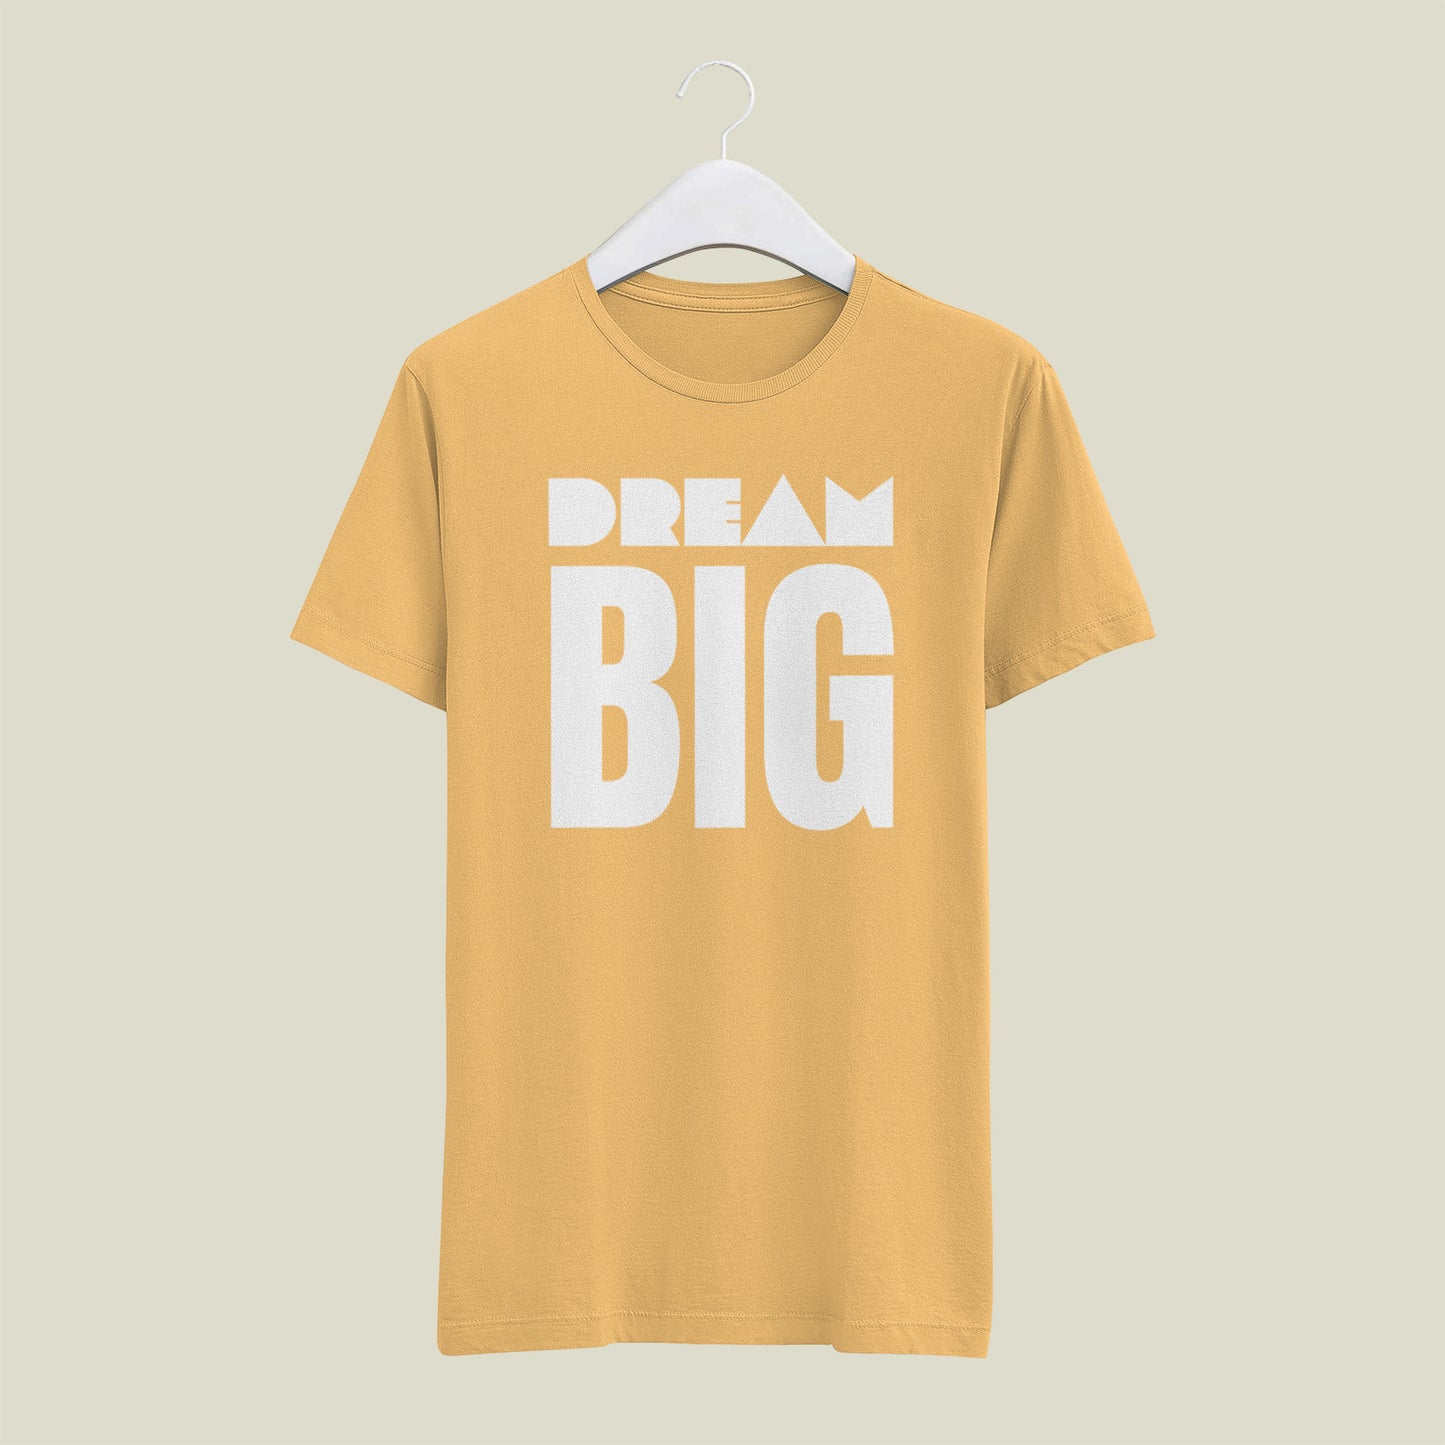 Dream Big T shirt